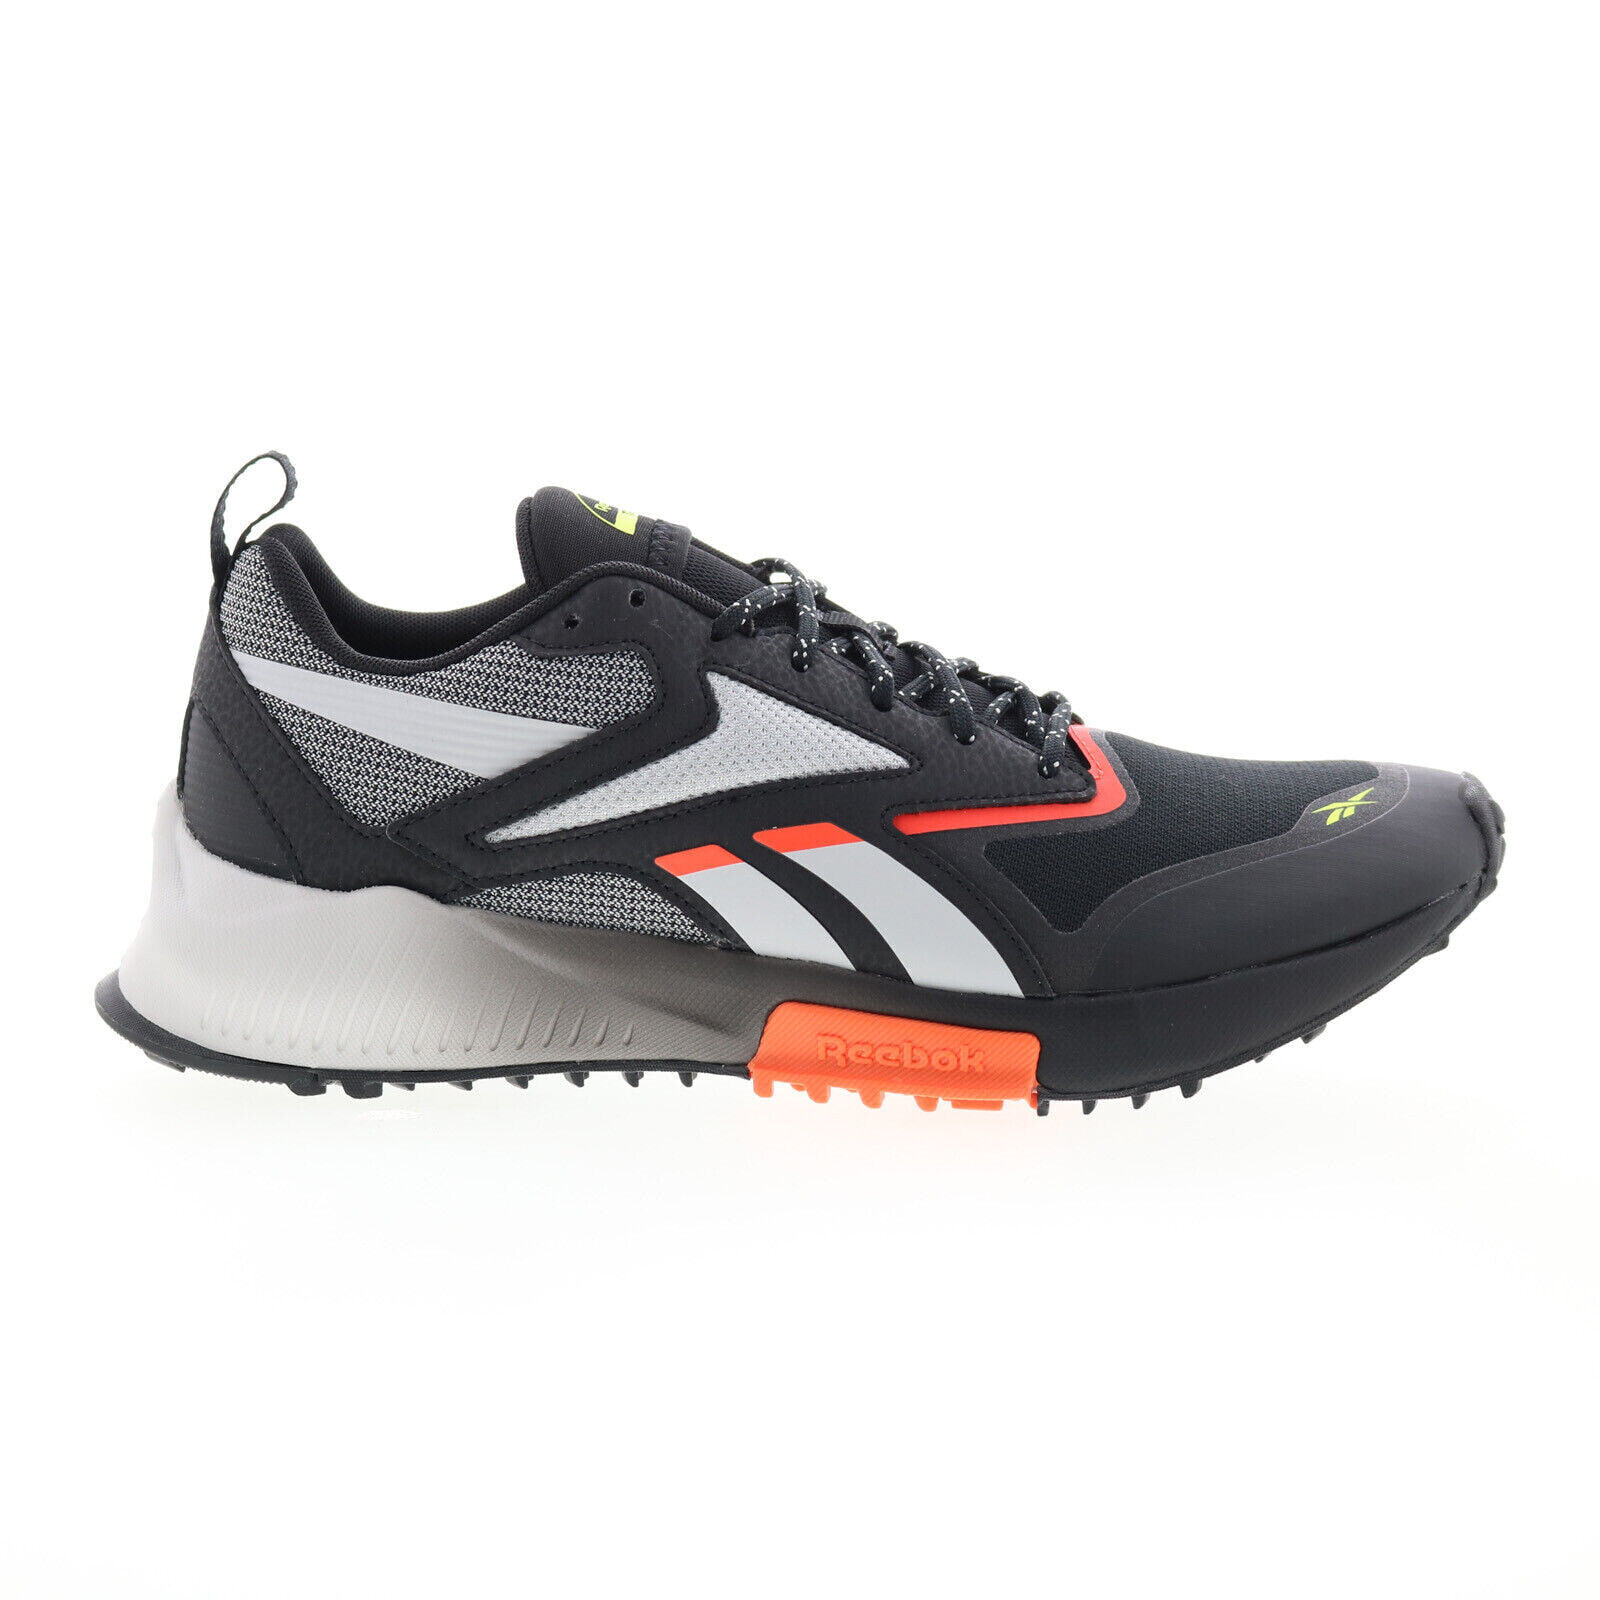 Reebok Lavante Trail 2 GY5215 Mens Black Nylon Athletic Cross Training Shoes 8.5